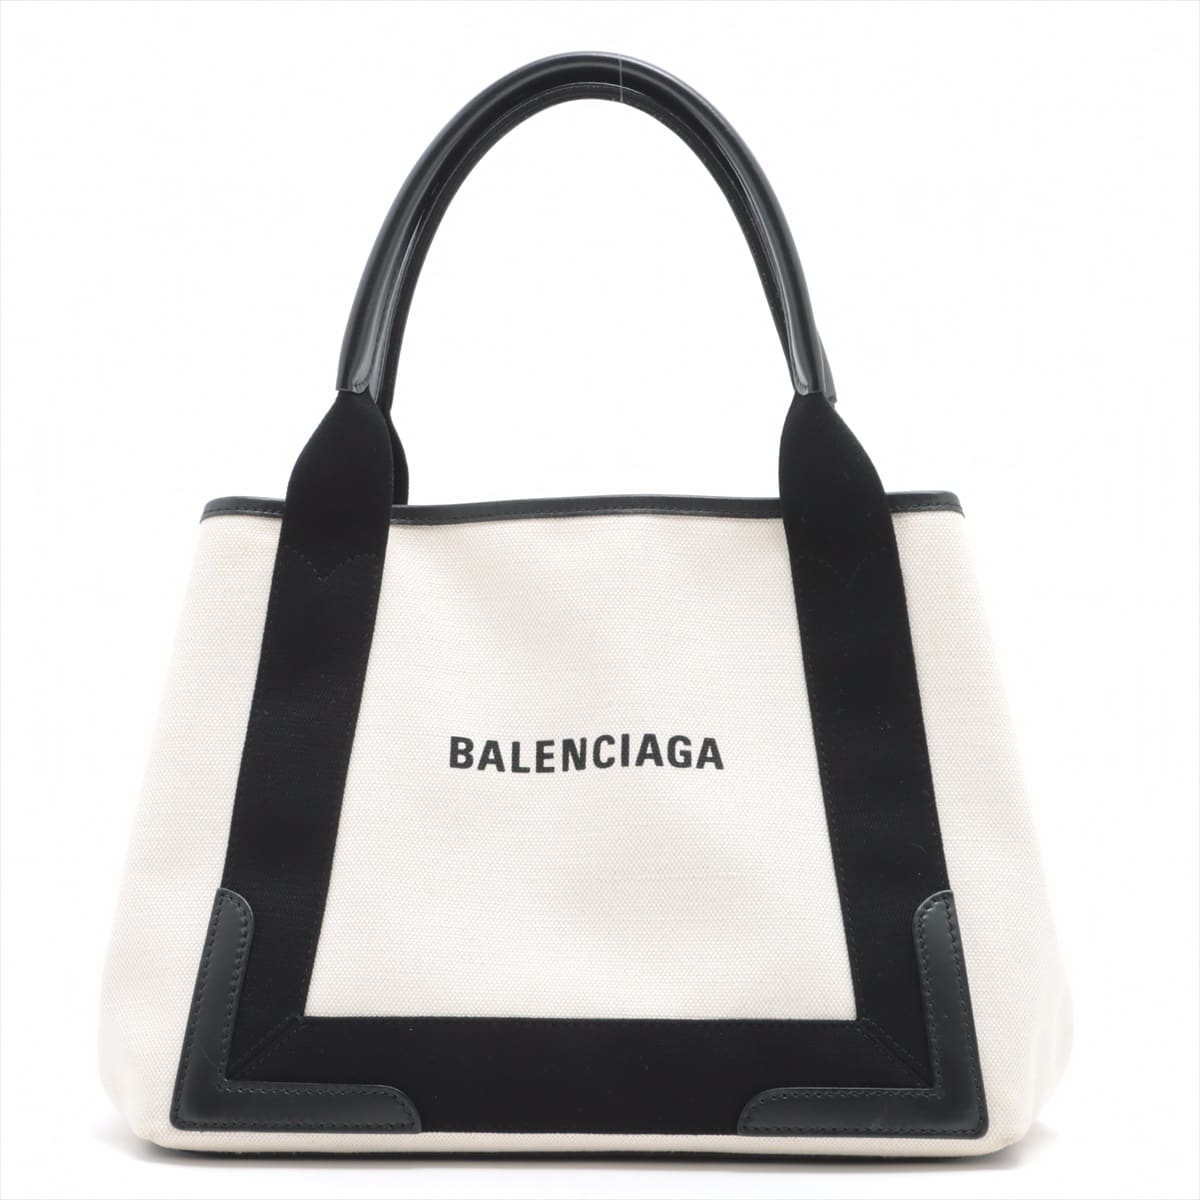 Balenciaga Navy Cabas Canvas & leather 2way handbag Black × White 339933 with pouch